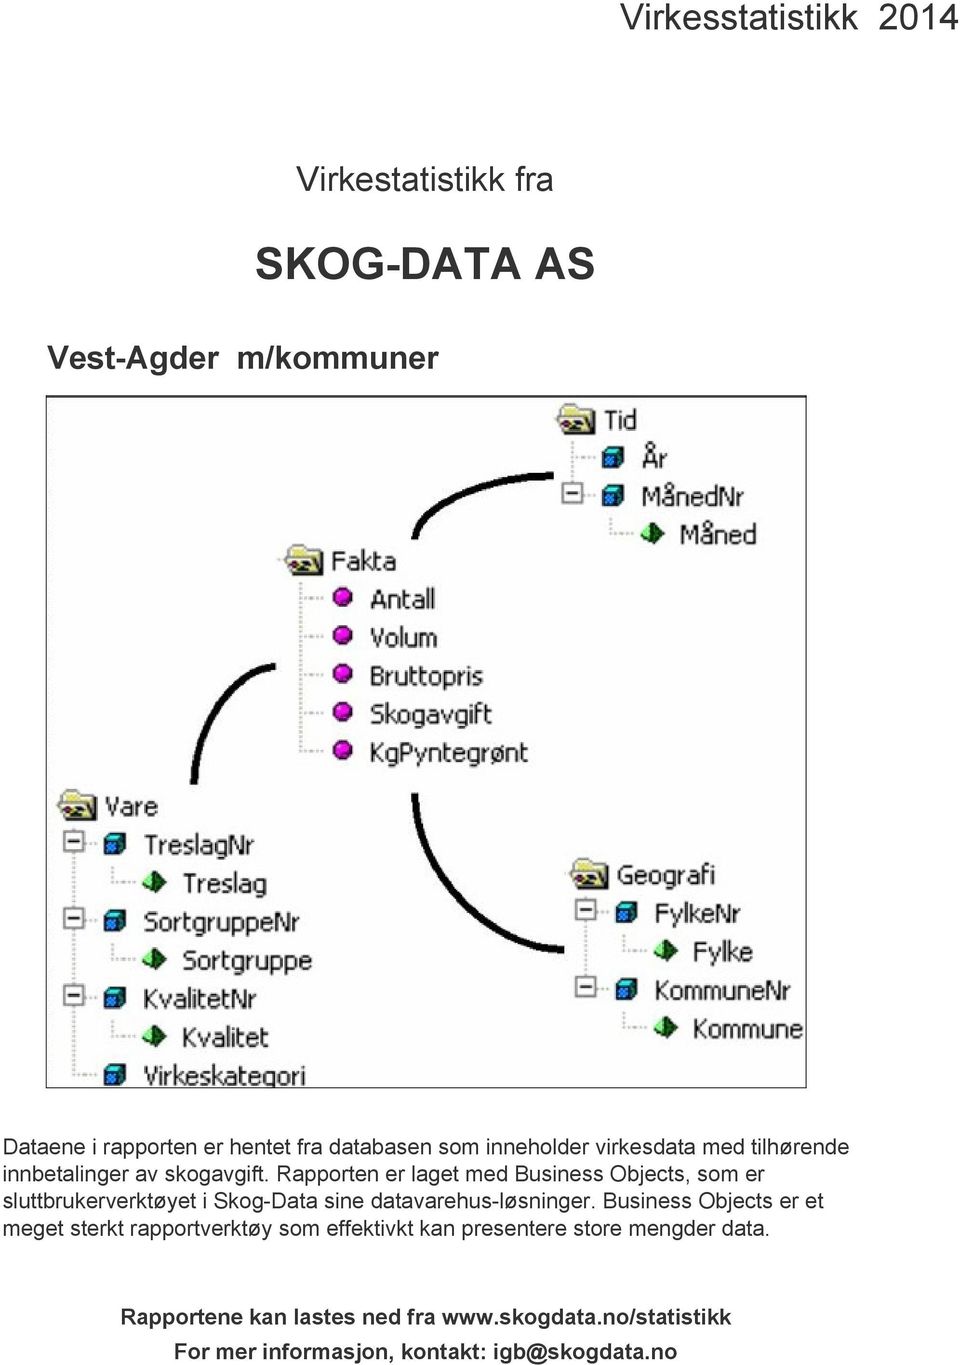 Rapporten er laget med Business Objects, som er sluttbrukerverktøyet i Skog-Data sine datavarehus-løsninger.